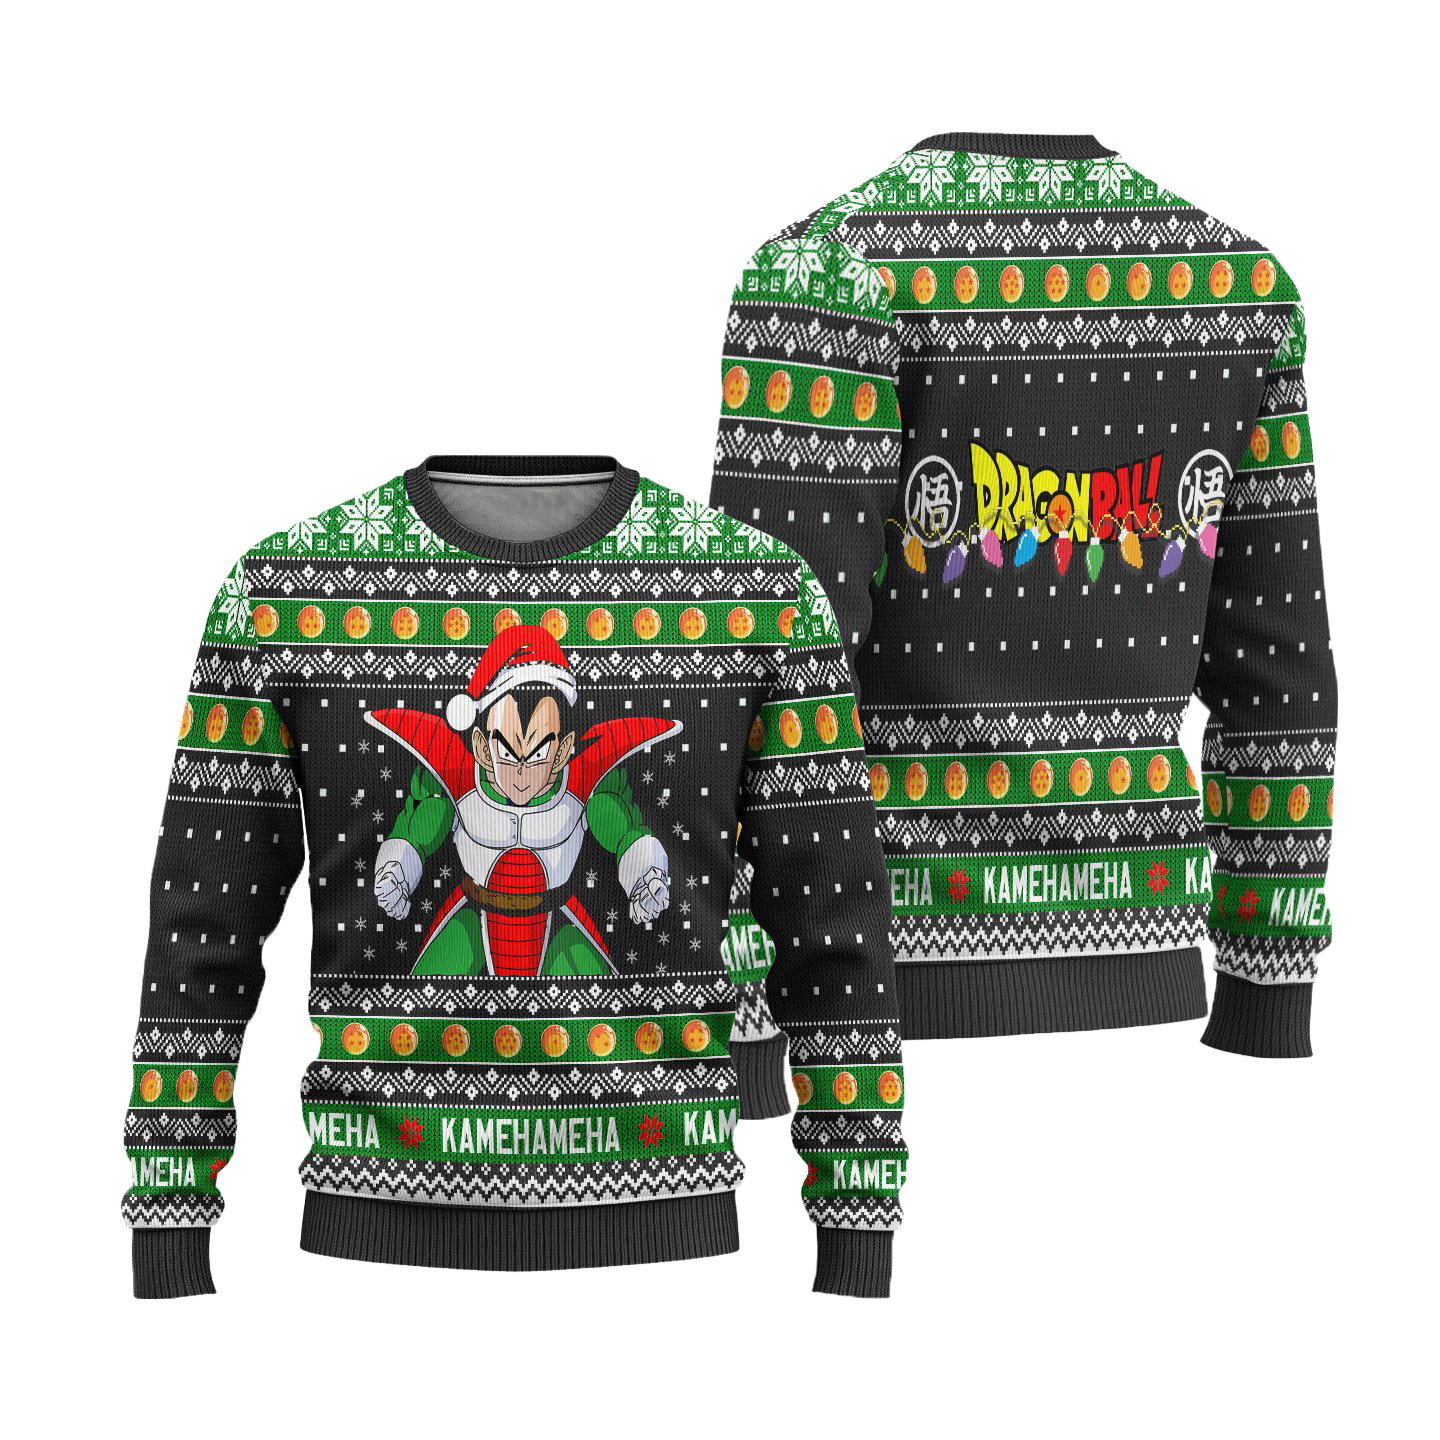 Vegeta Dragon Ball Anime Ugly Christmas Sweater Xmas Gift